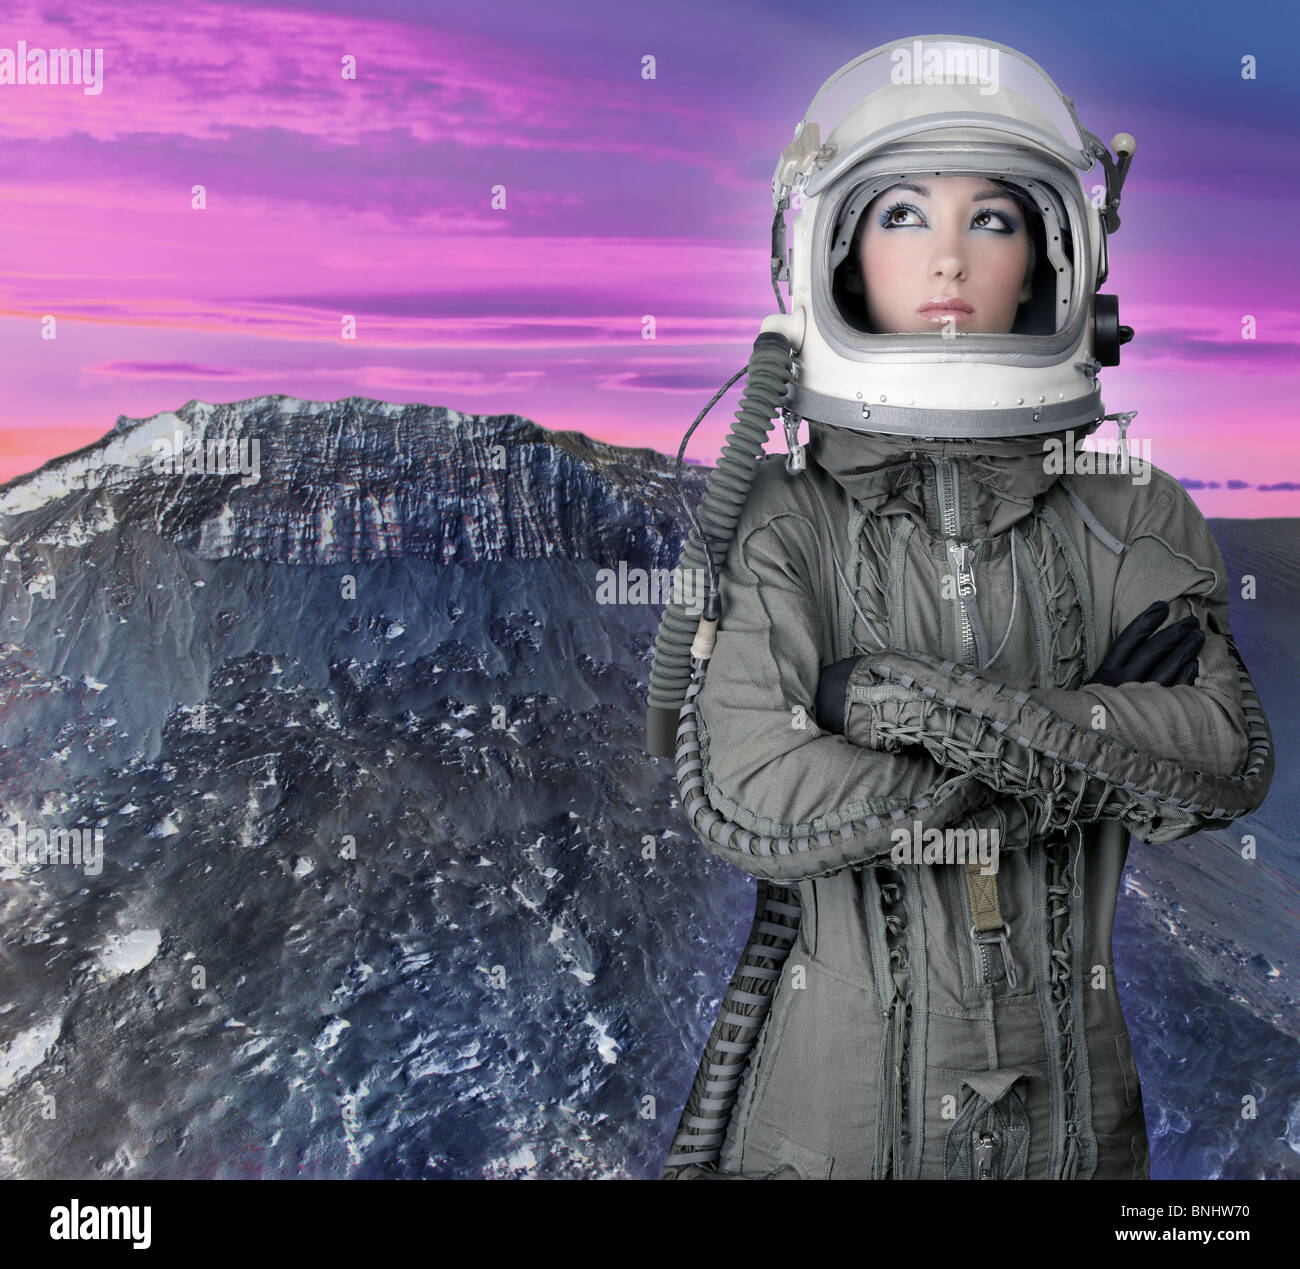 Vaisseau spatial astronaute casque avion fashion woman mars lune planète Banque D'Images